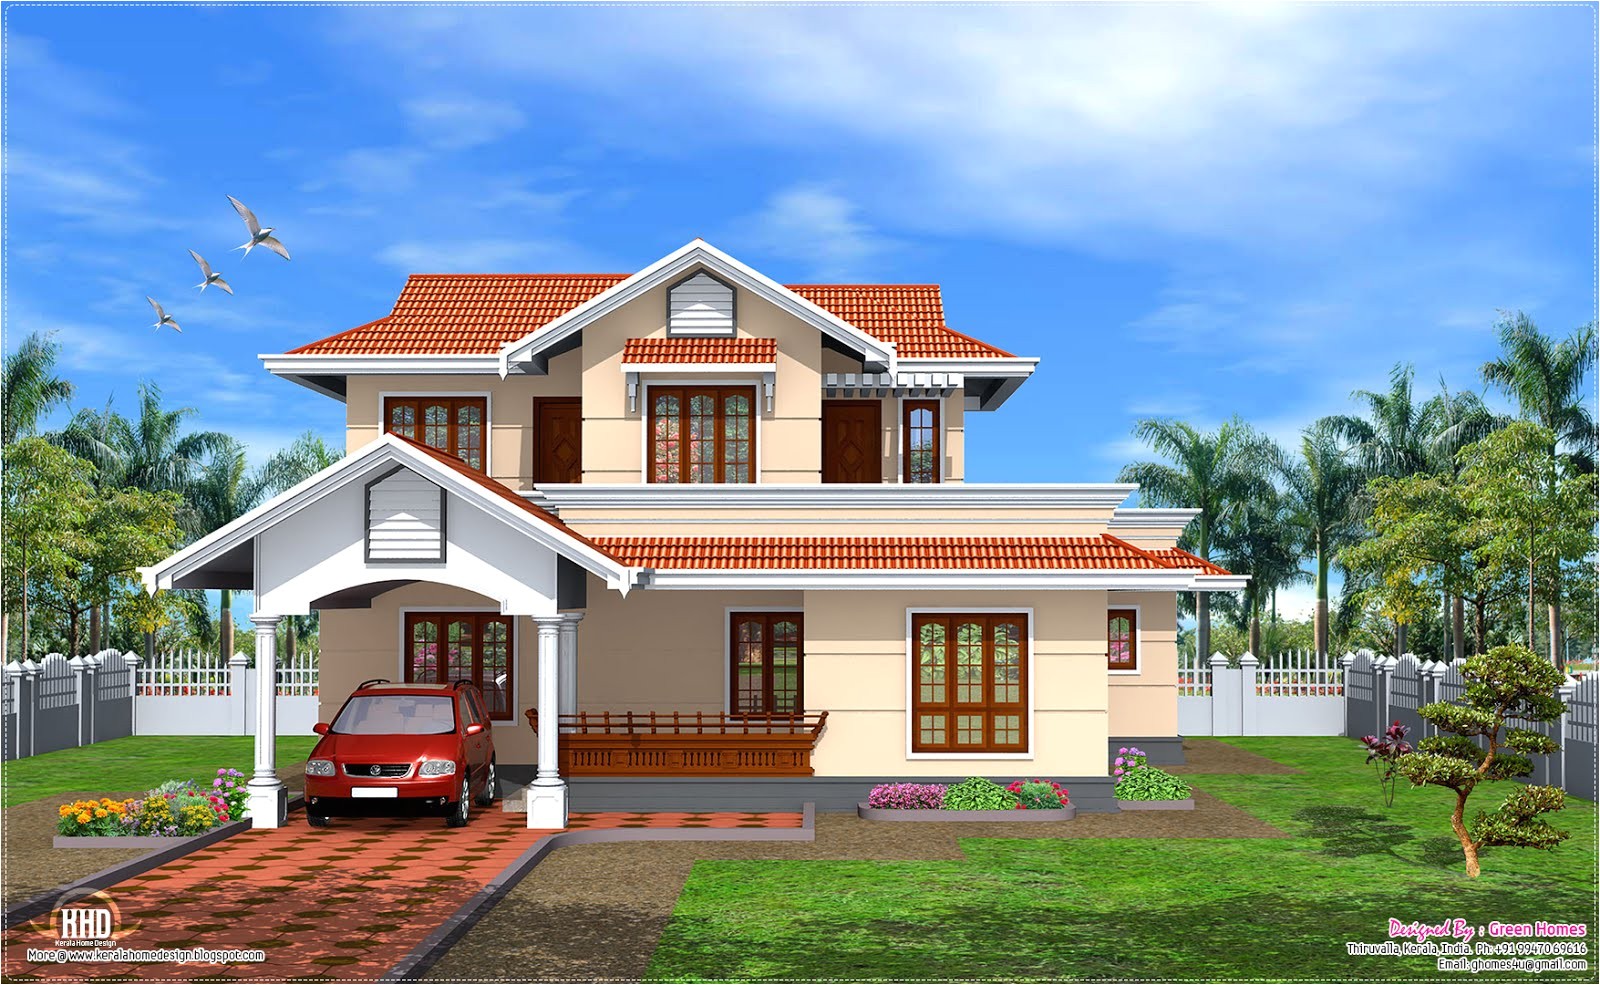 Kerala Model Home Plans Window Models for Houses Home Design Inside